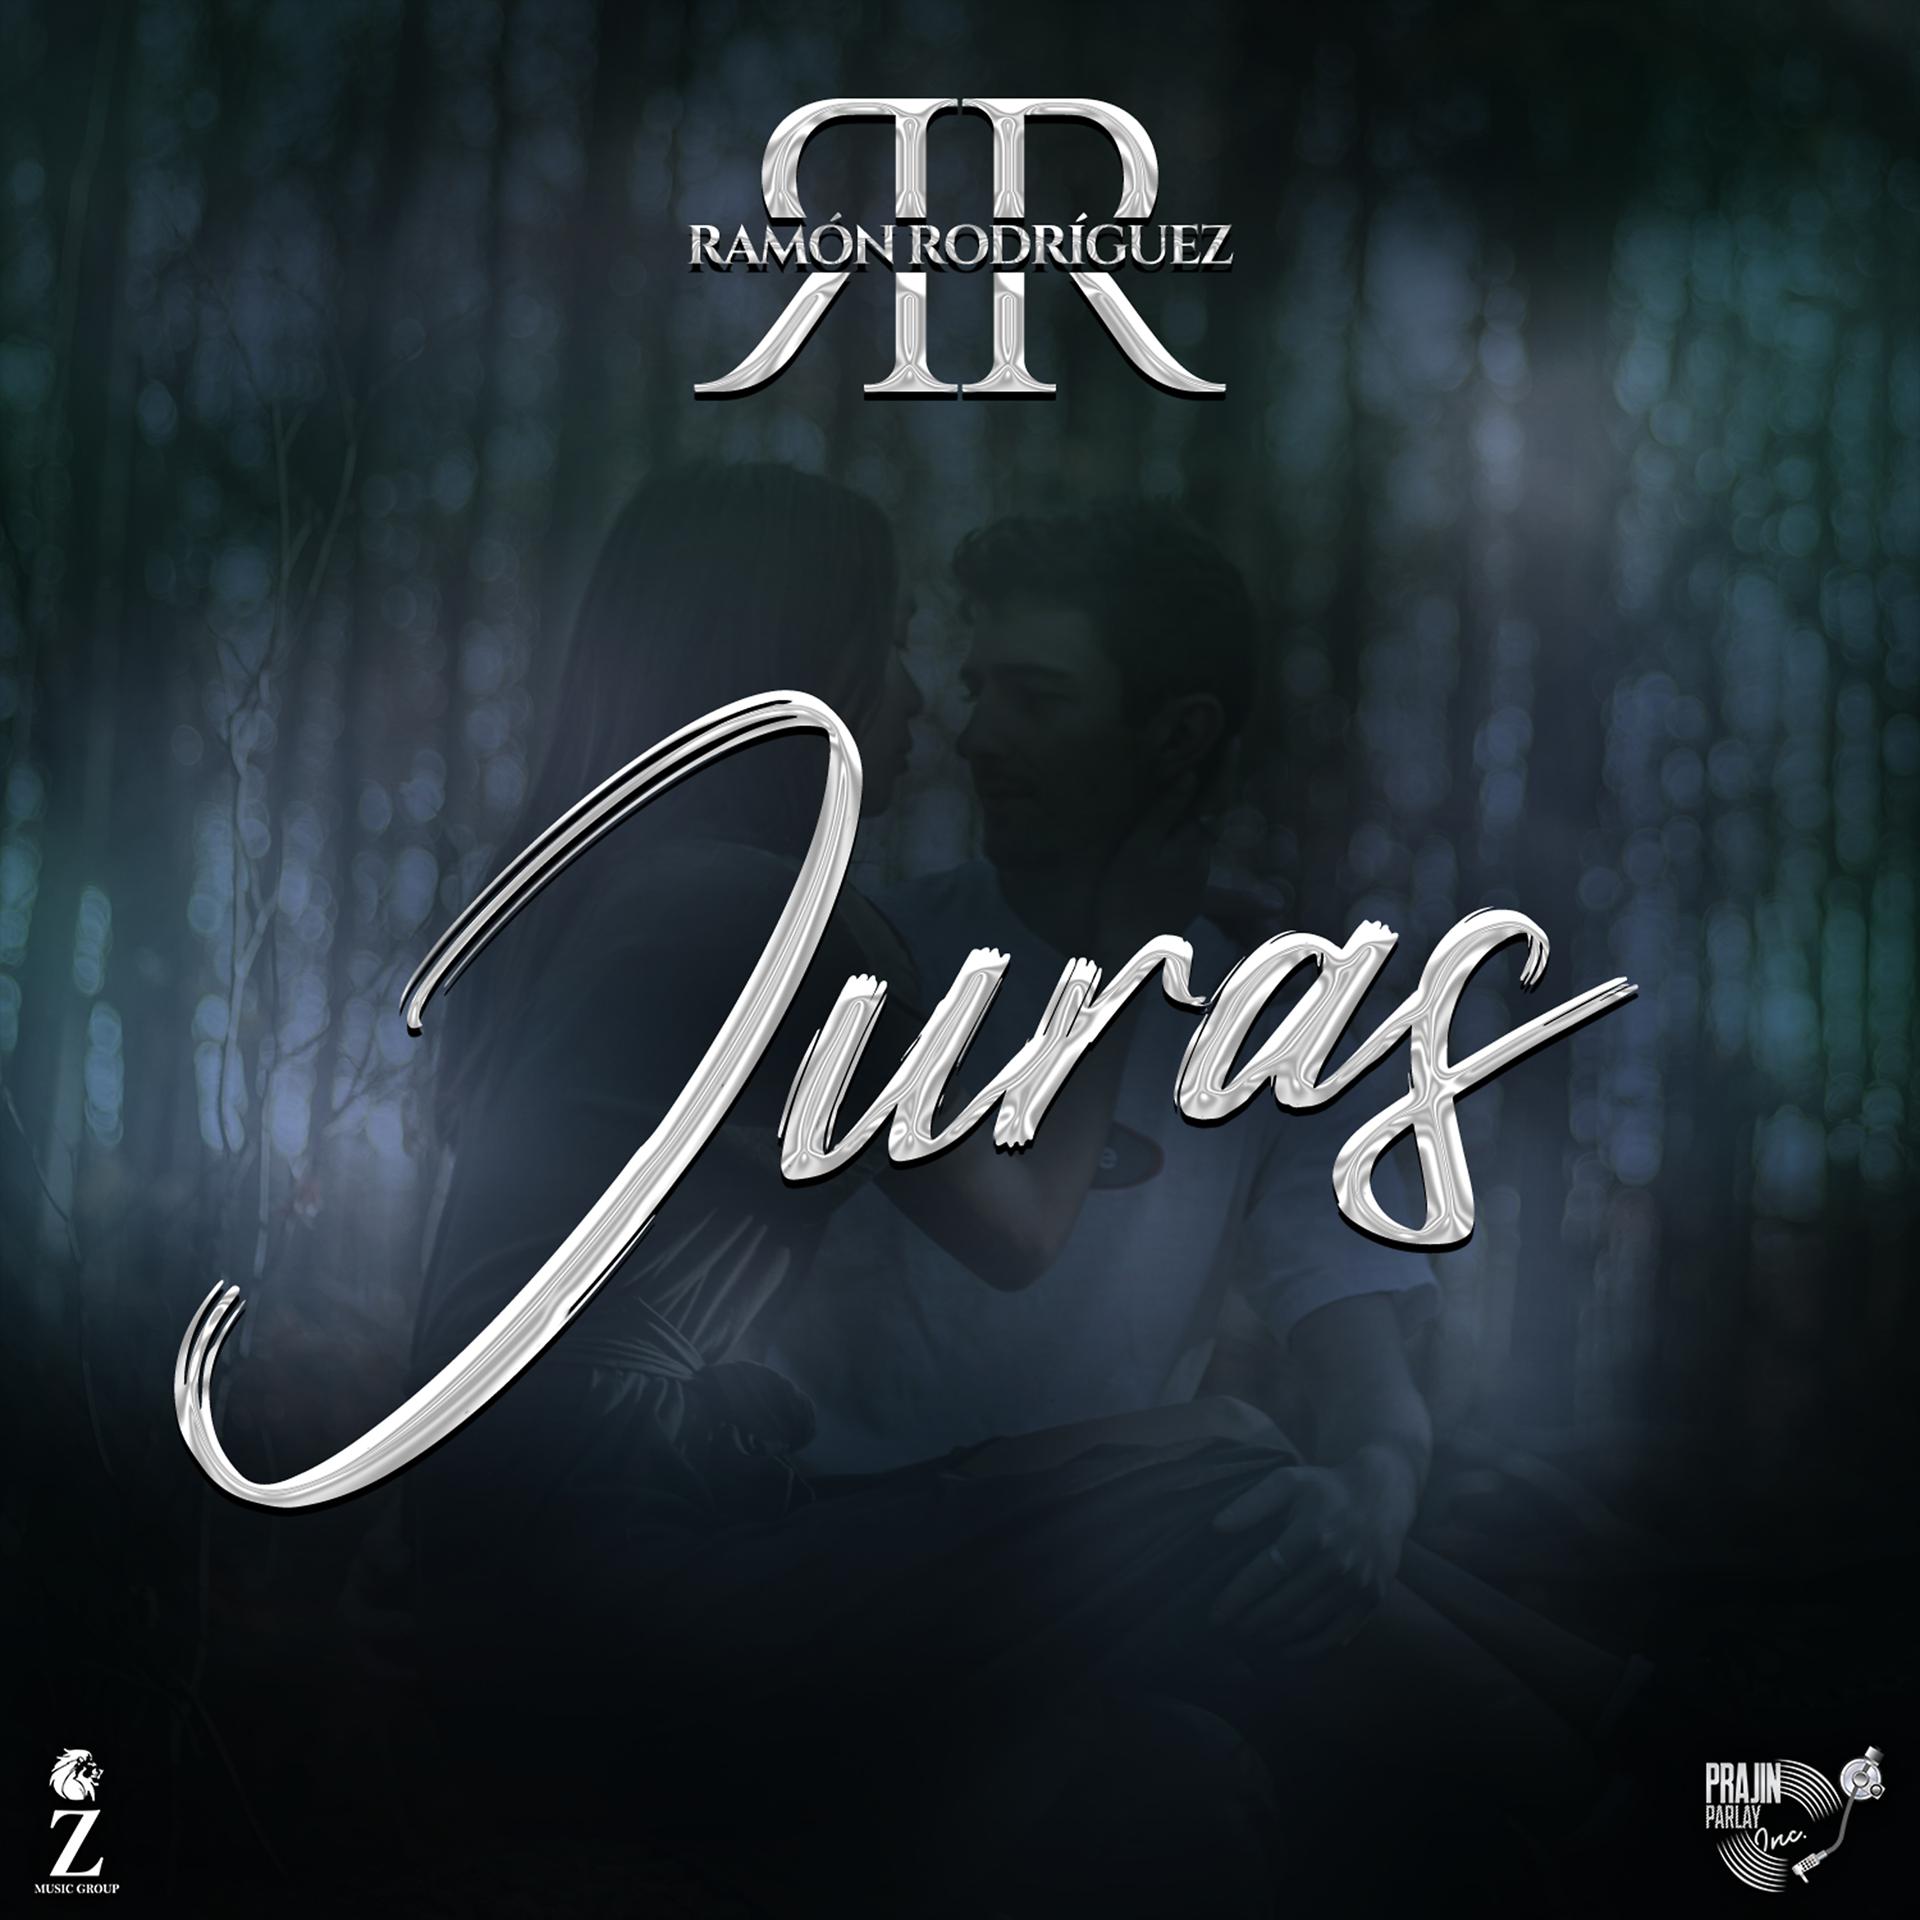 Постер альбома Juras